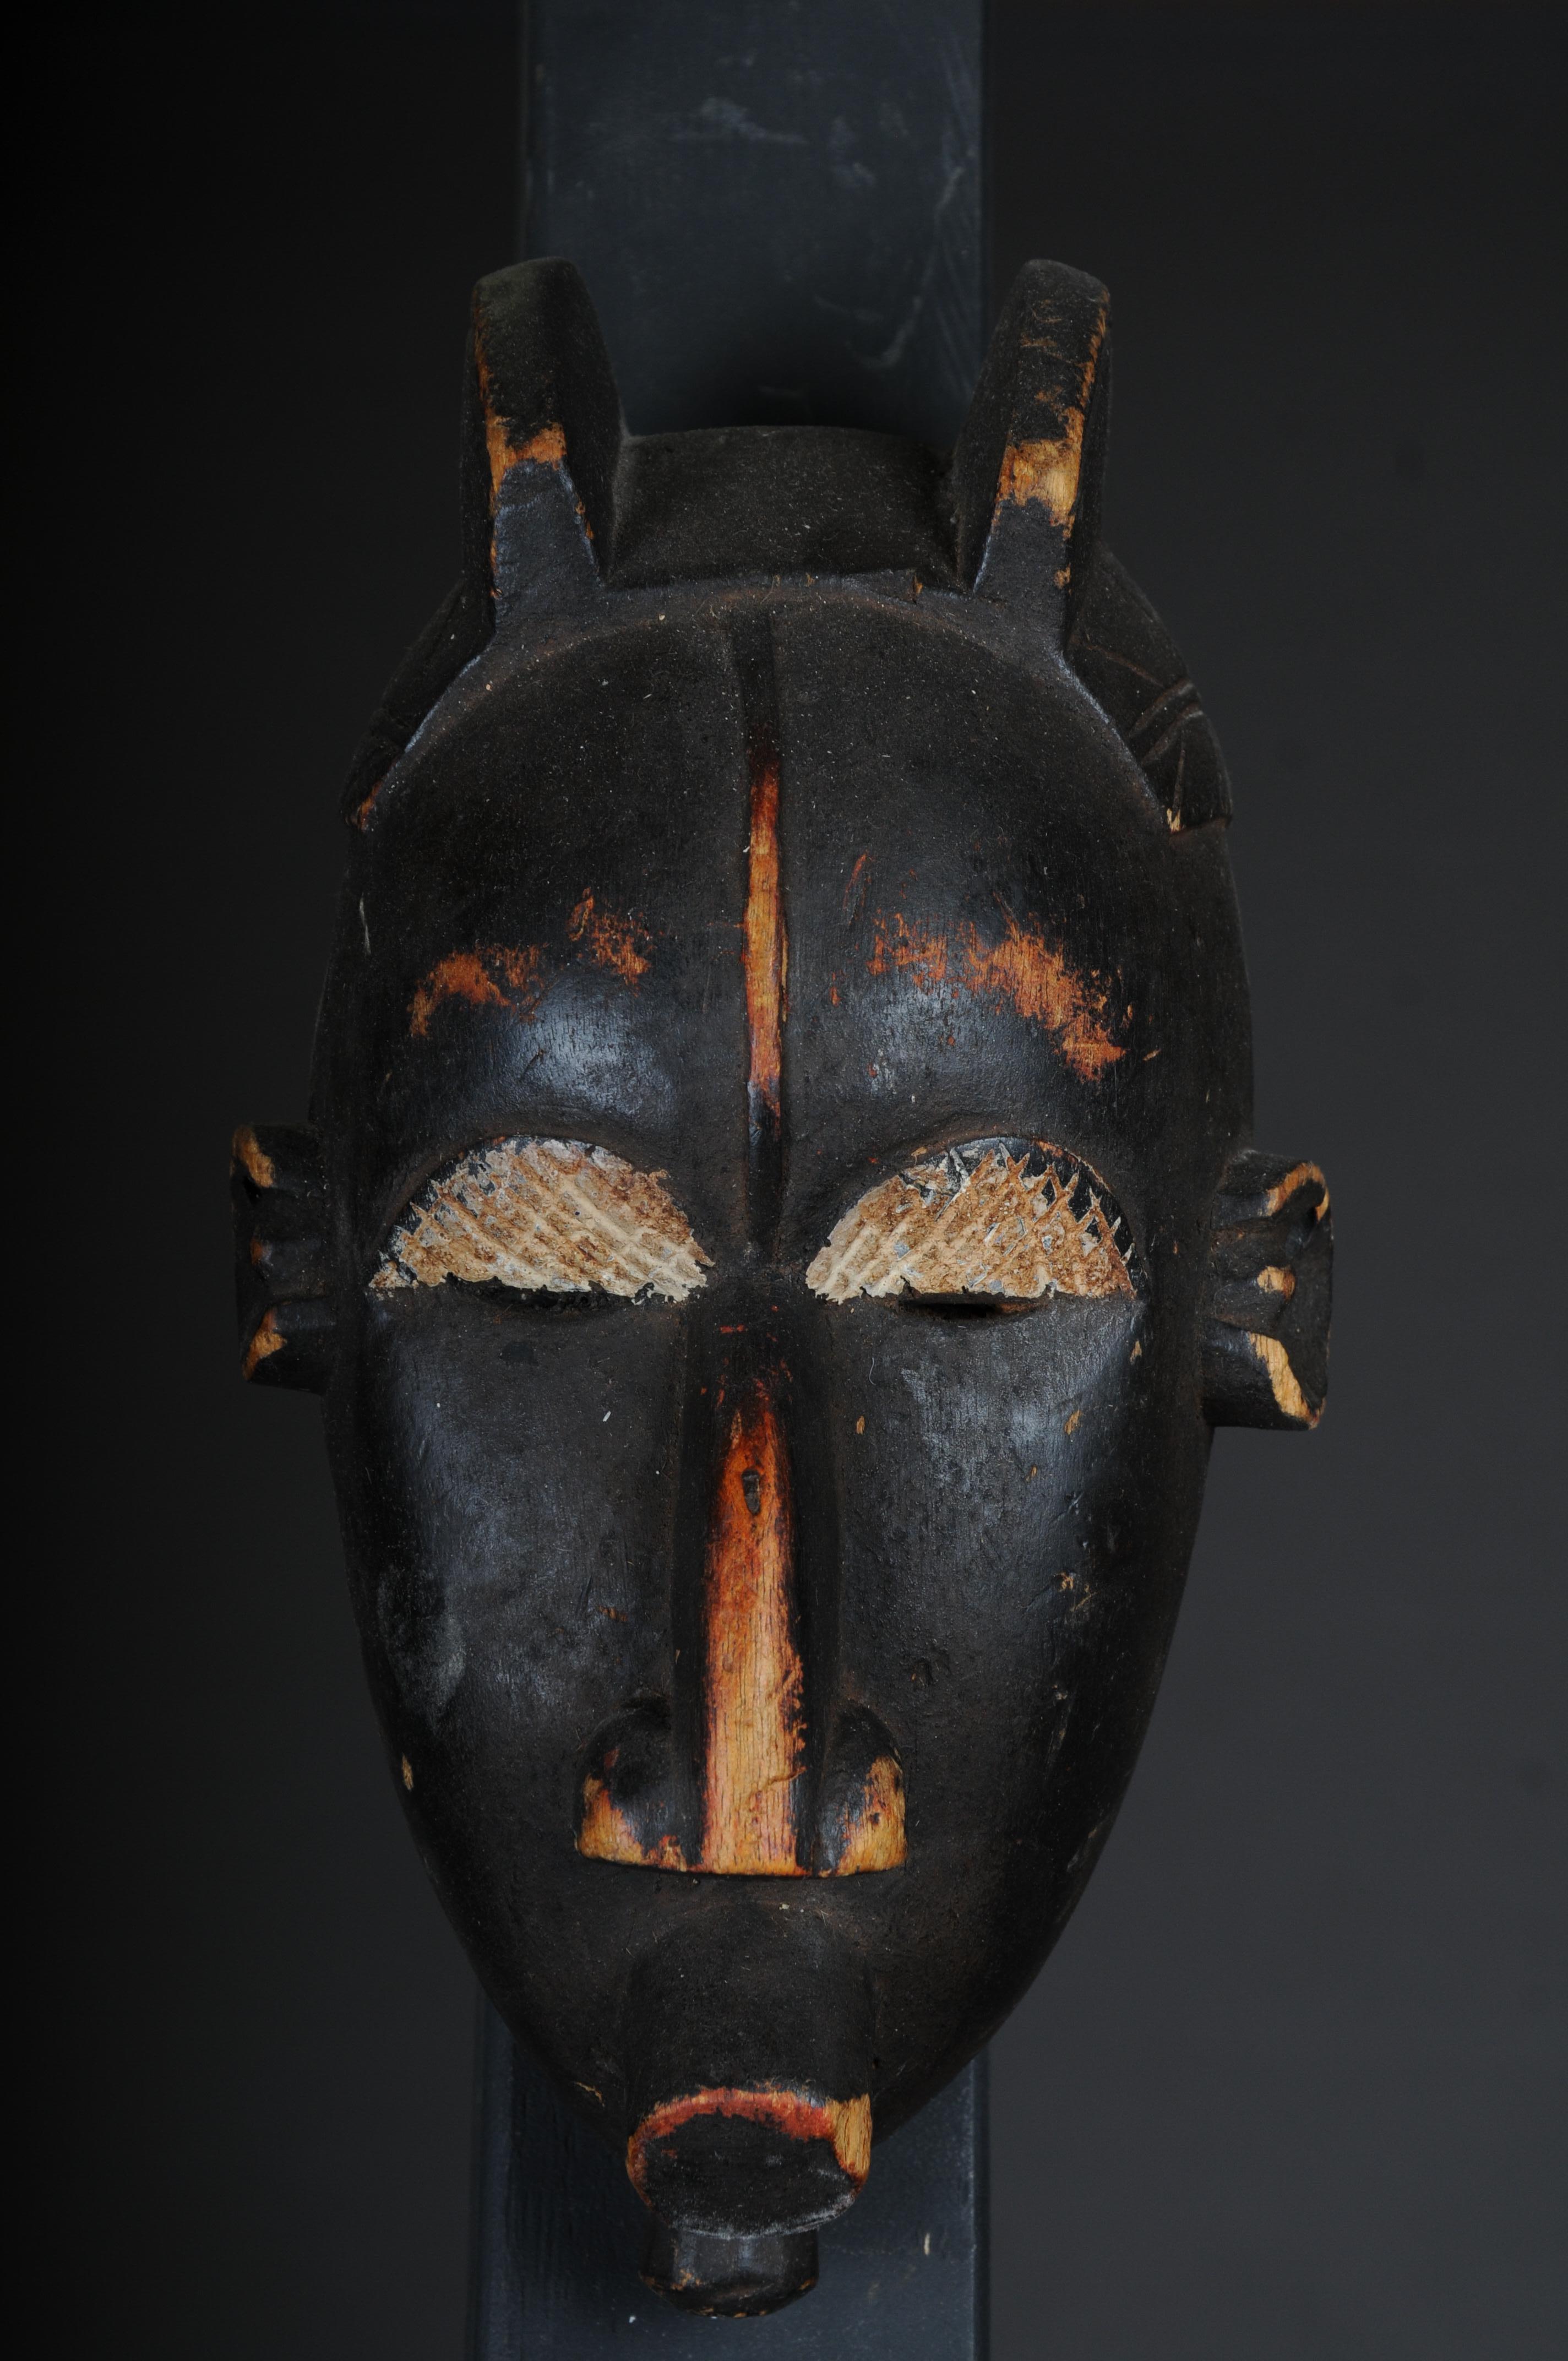 Máscara Antigua de Madera Tallada del Siglo XX, Arte Africano

Madera maciza, tallada a mano, África probablemente siglo

Muy decorativo. Procede de una colección privada de Berlín.